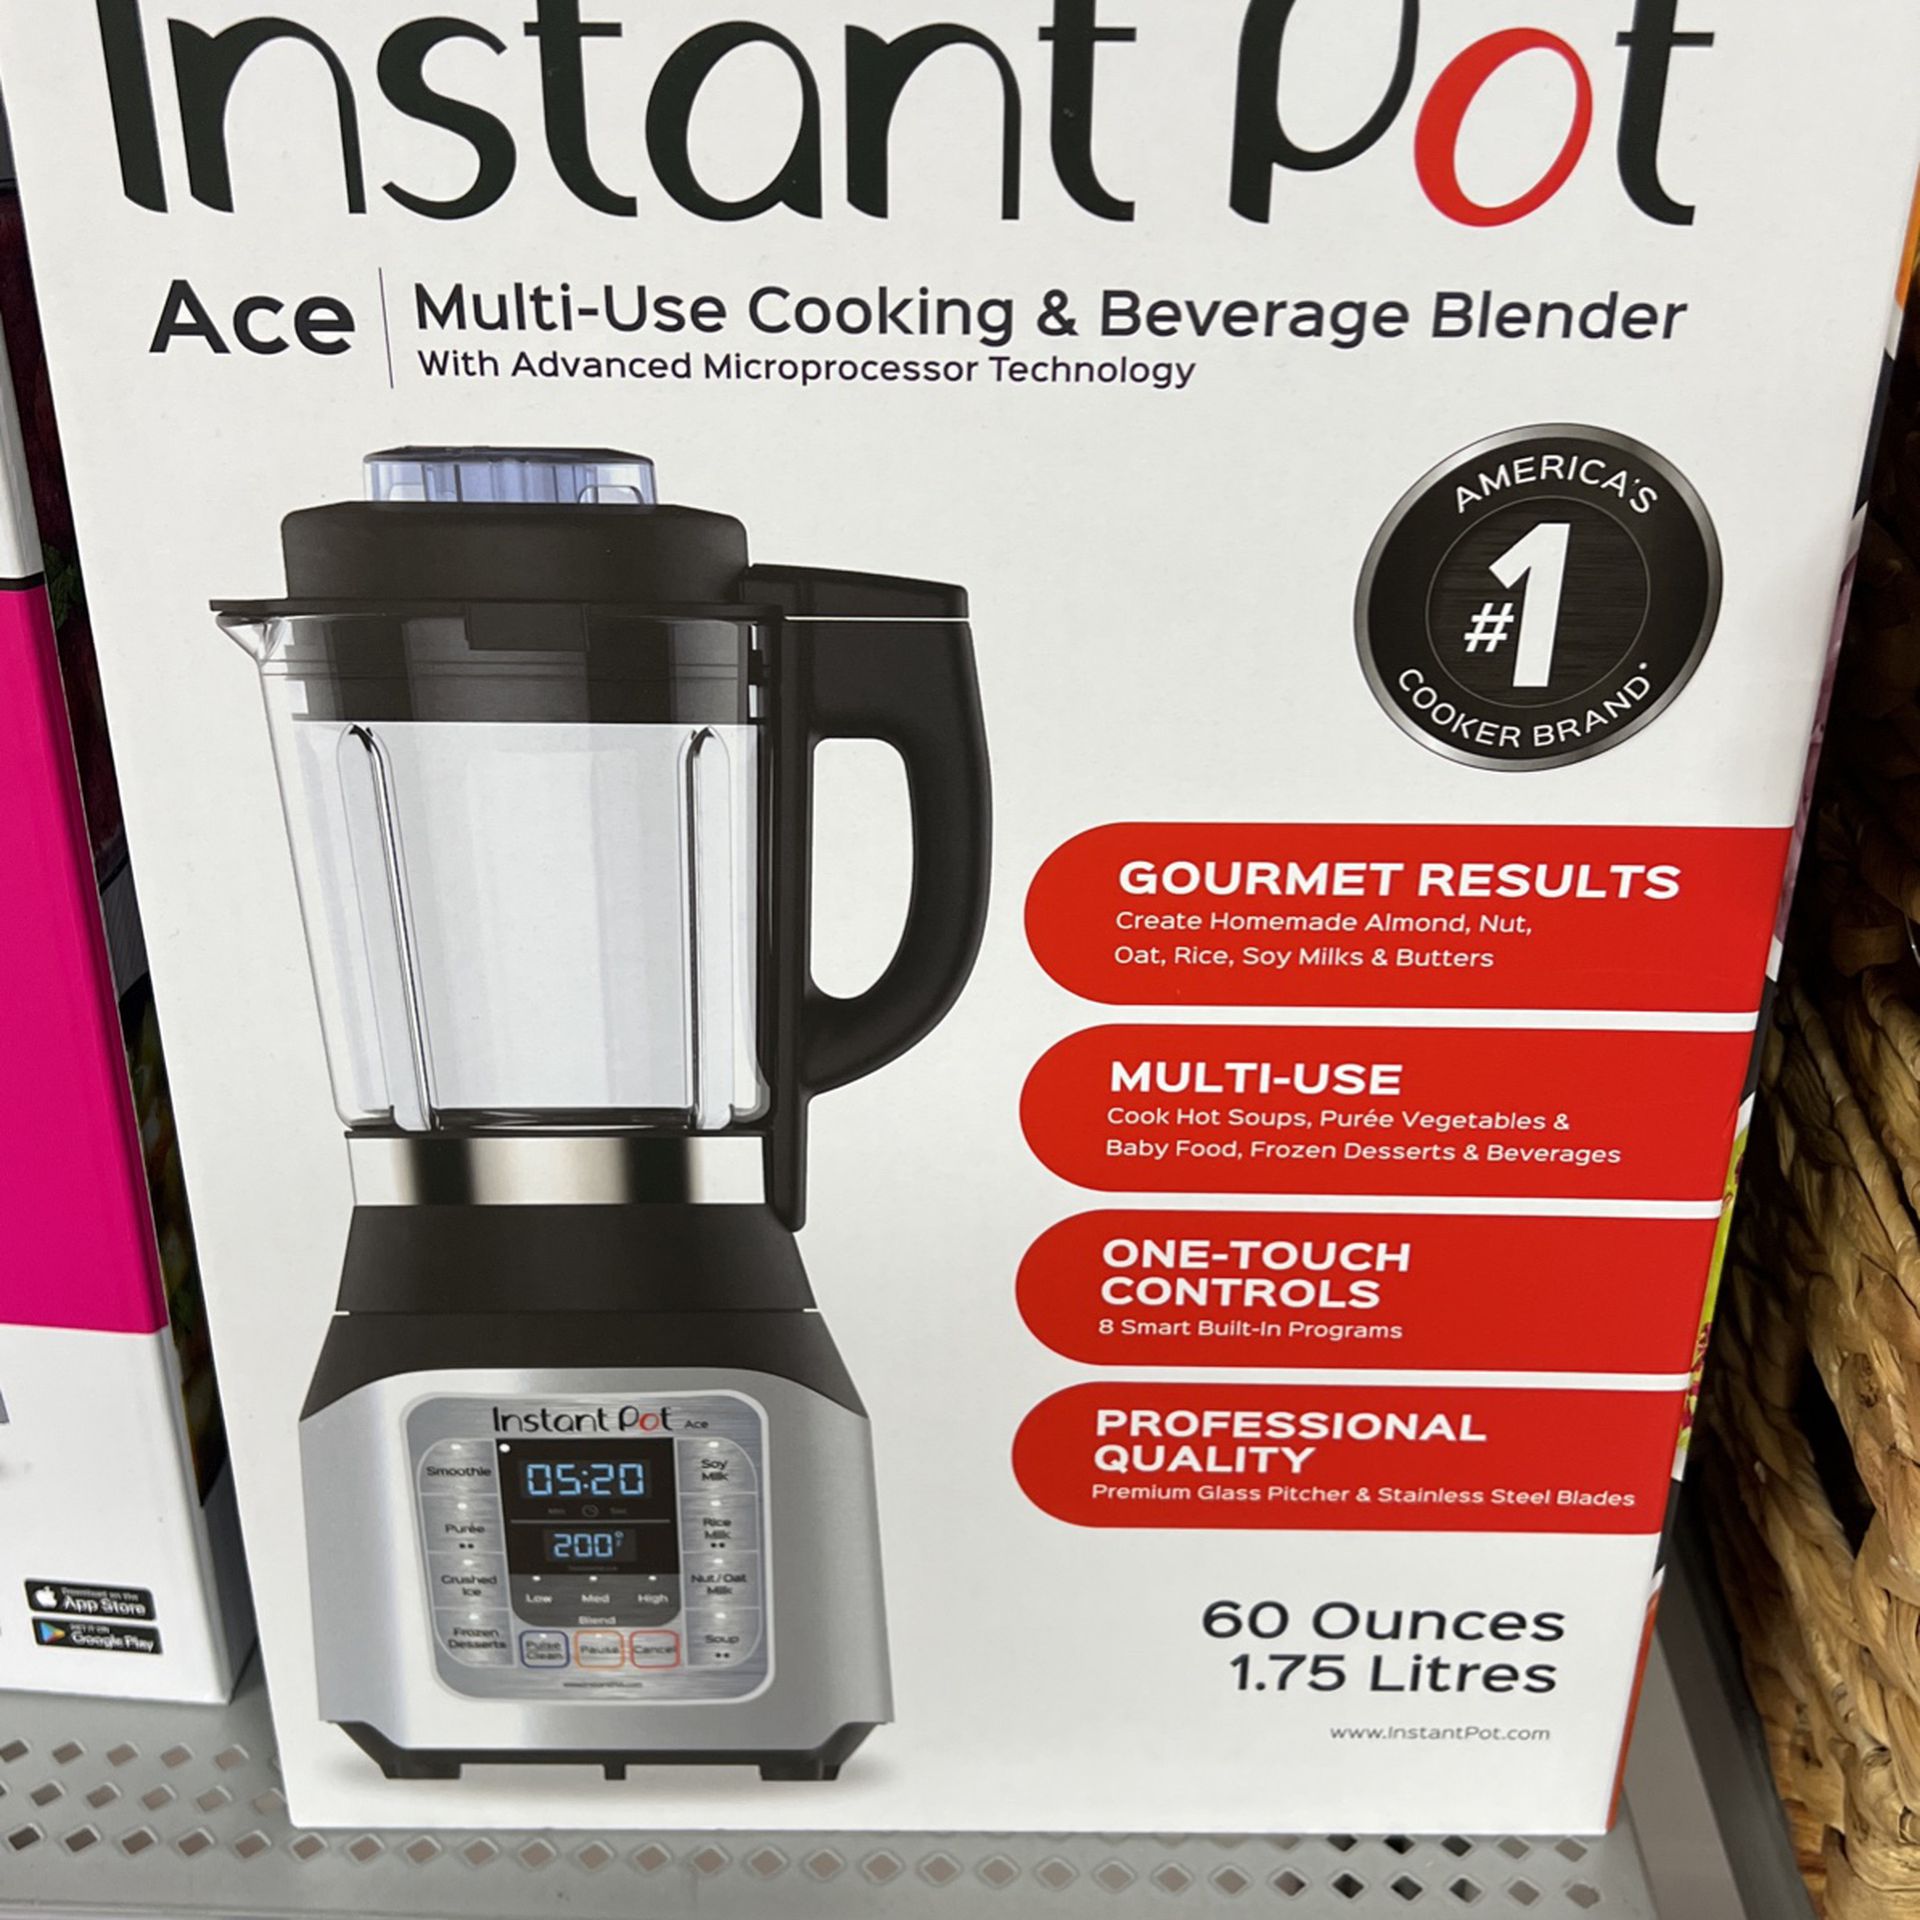 Instant Pot Ace Plus blender on sale: Save $60